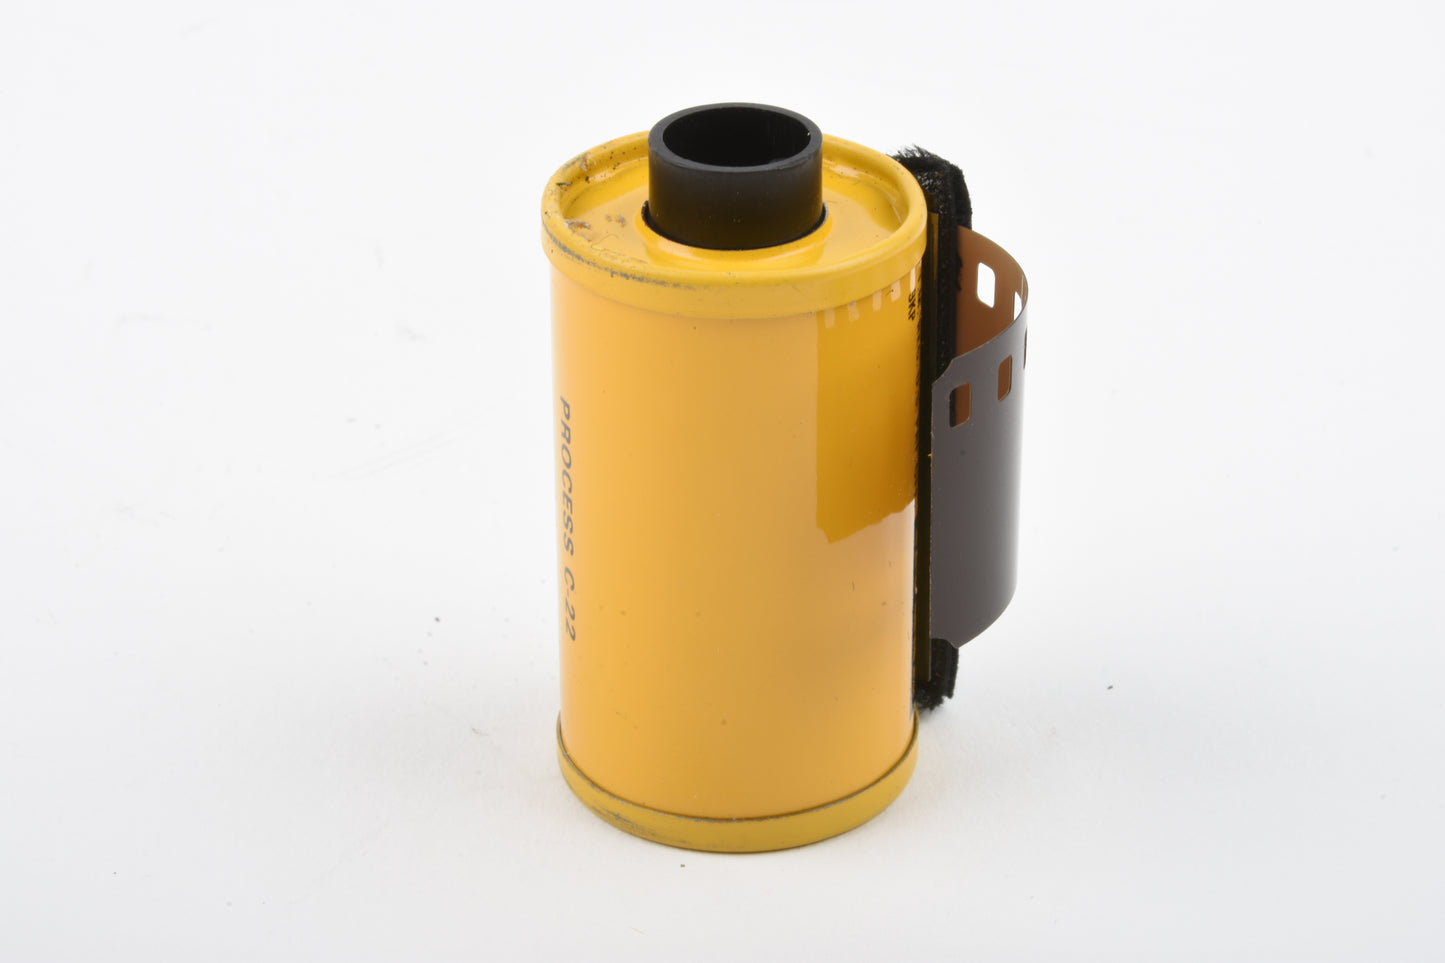 Kodak CX 135-20 C22 80ASA film in yellow metal canister